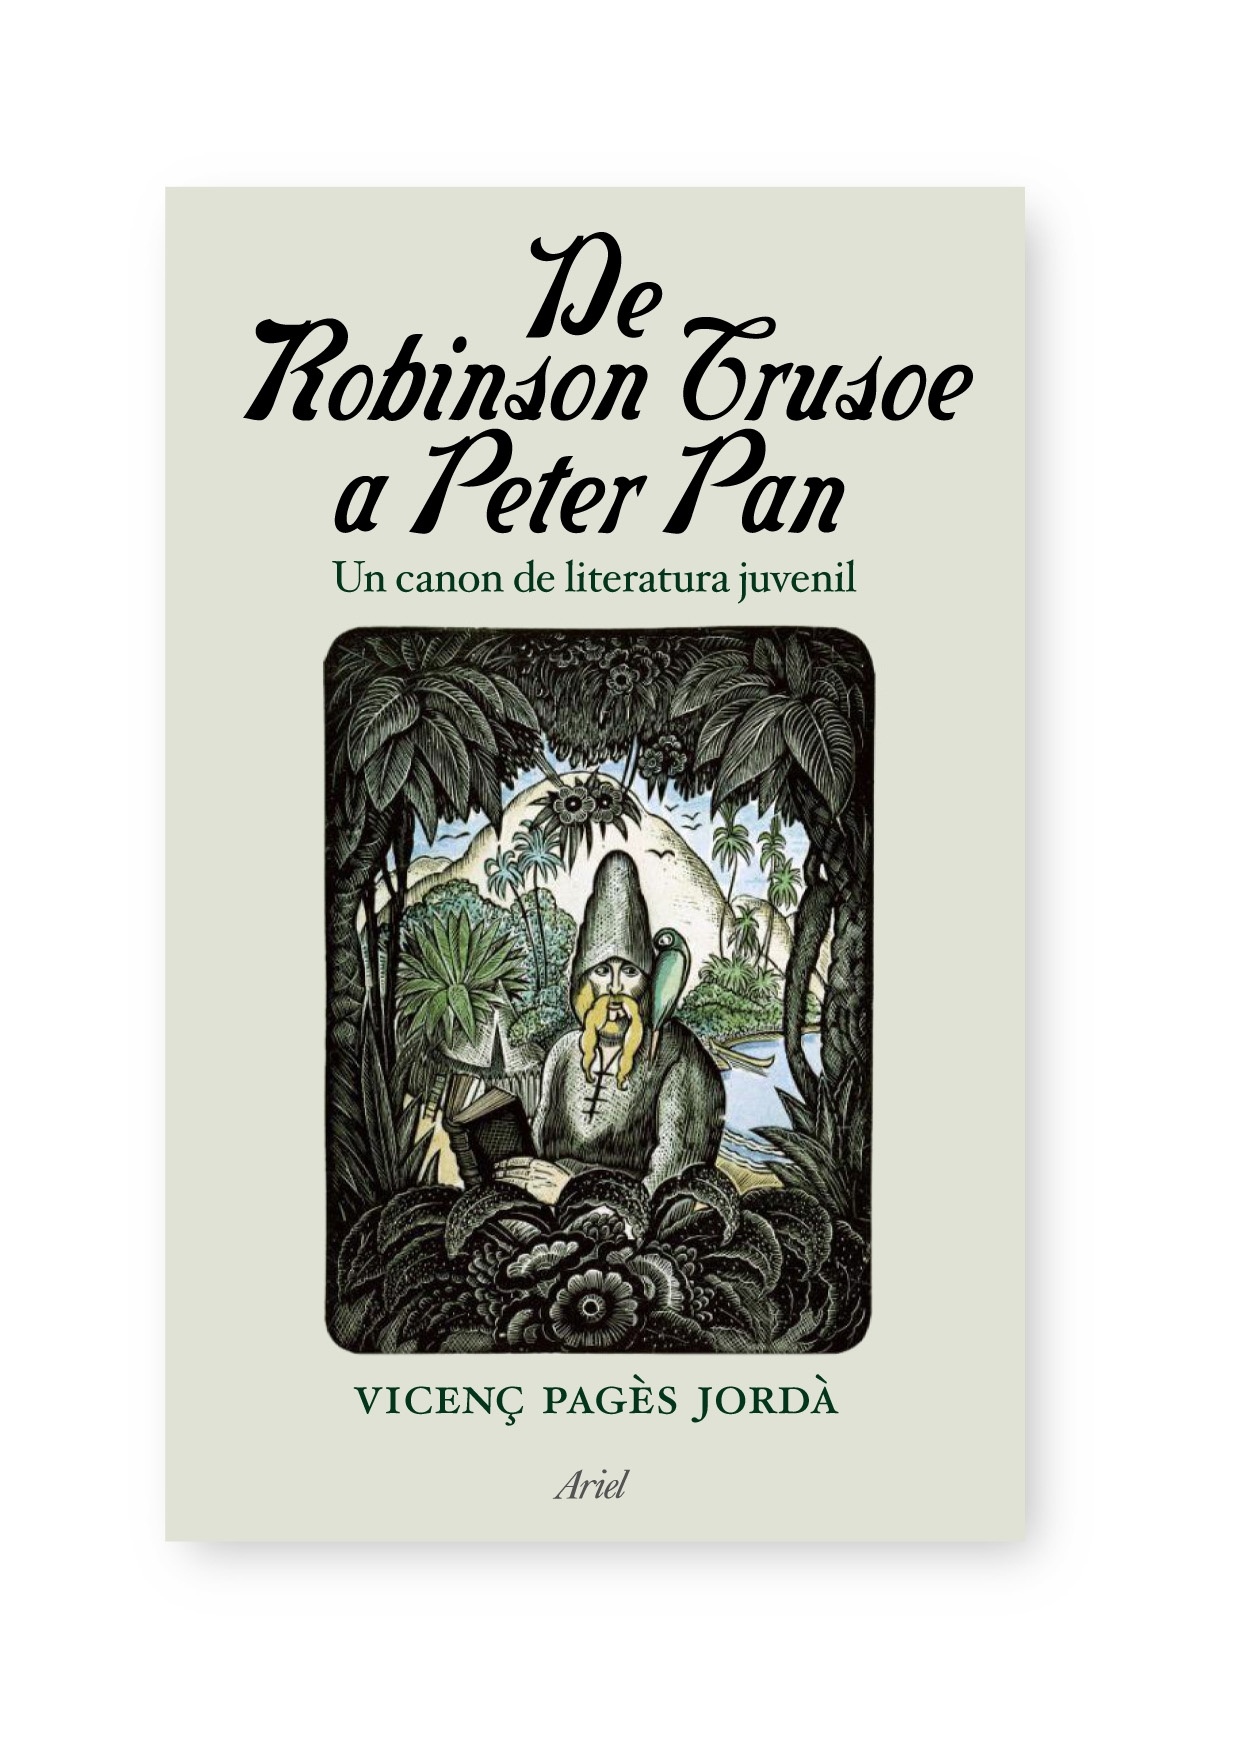 De Robinson Crusoe a Peter Pan "Un canon de literatura juvenil"